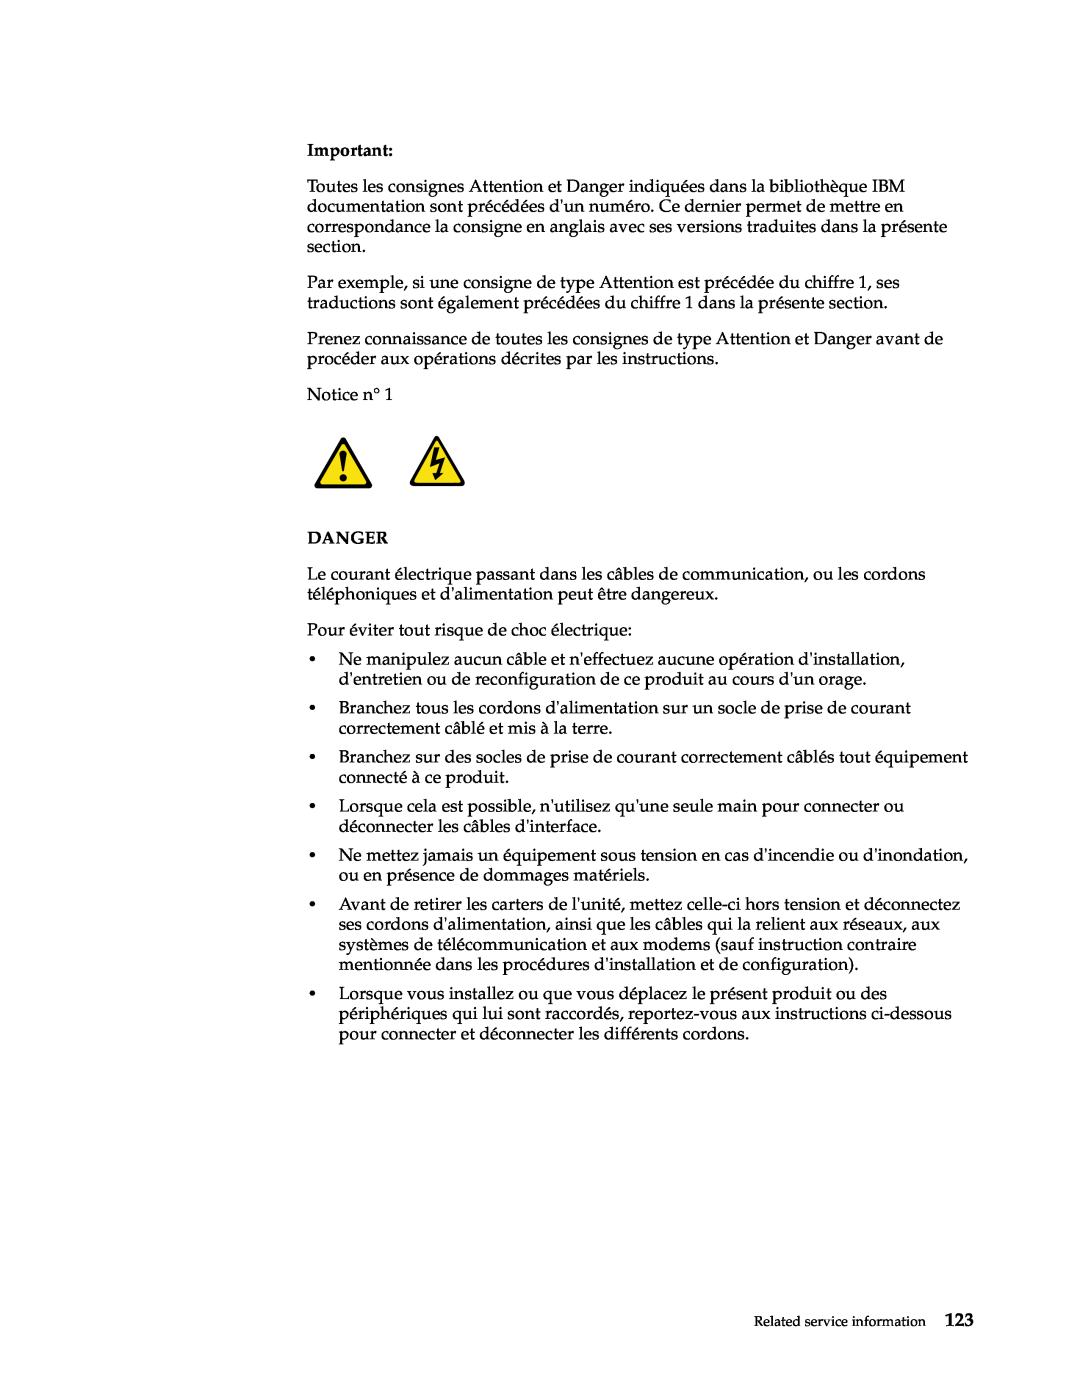 IBM x Series 200 manual Notice n 